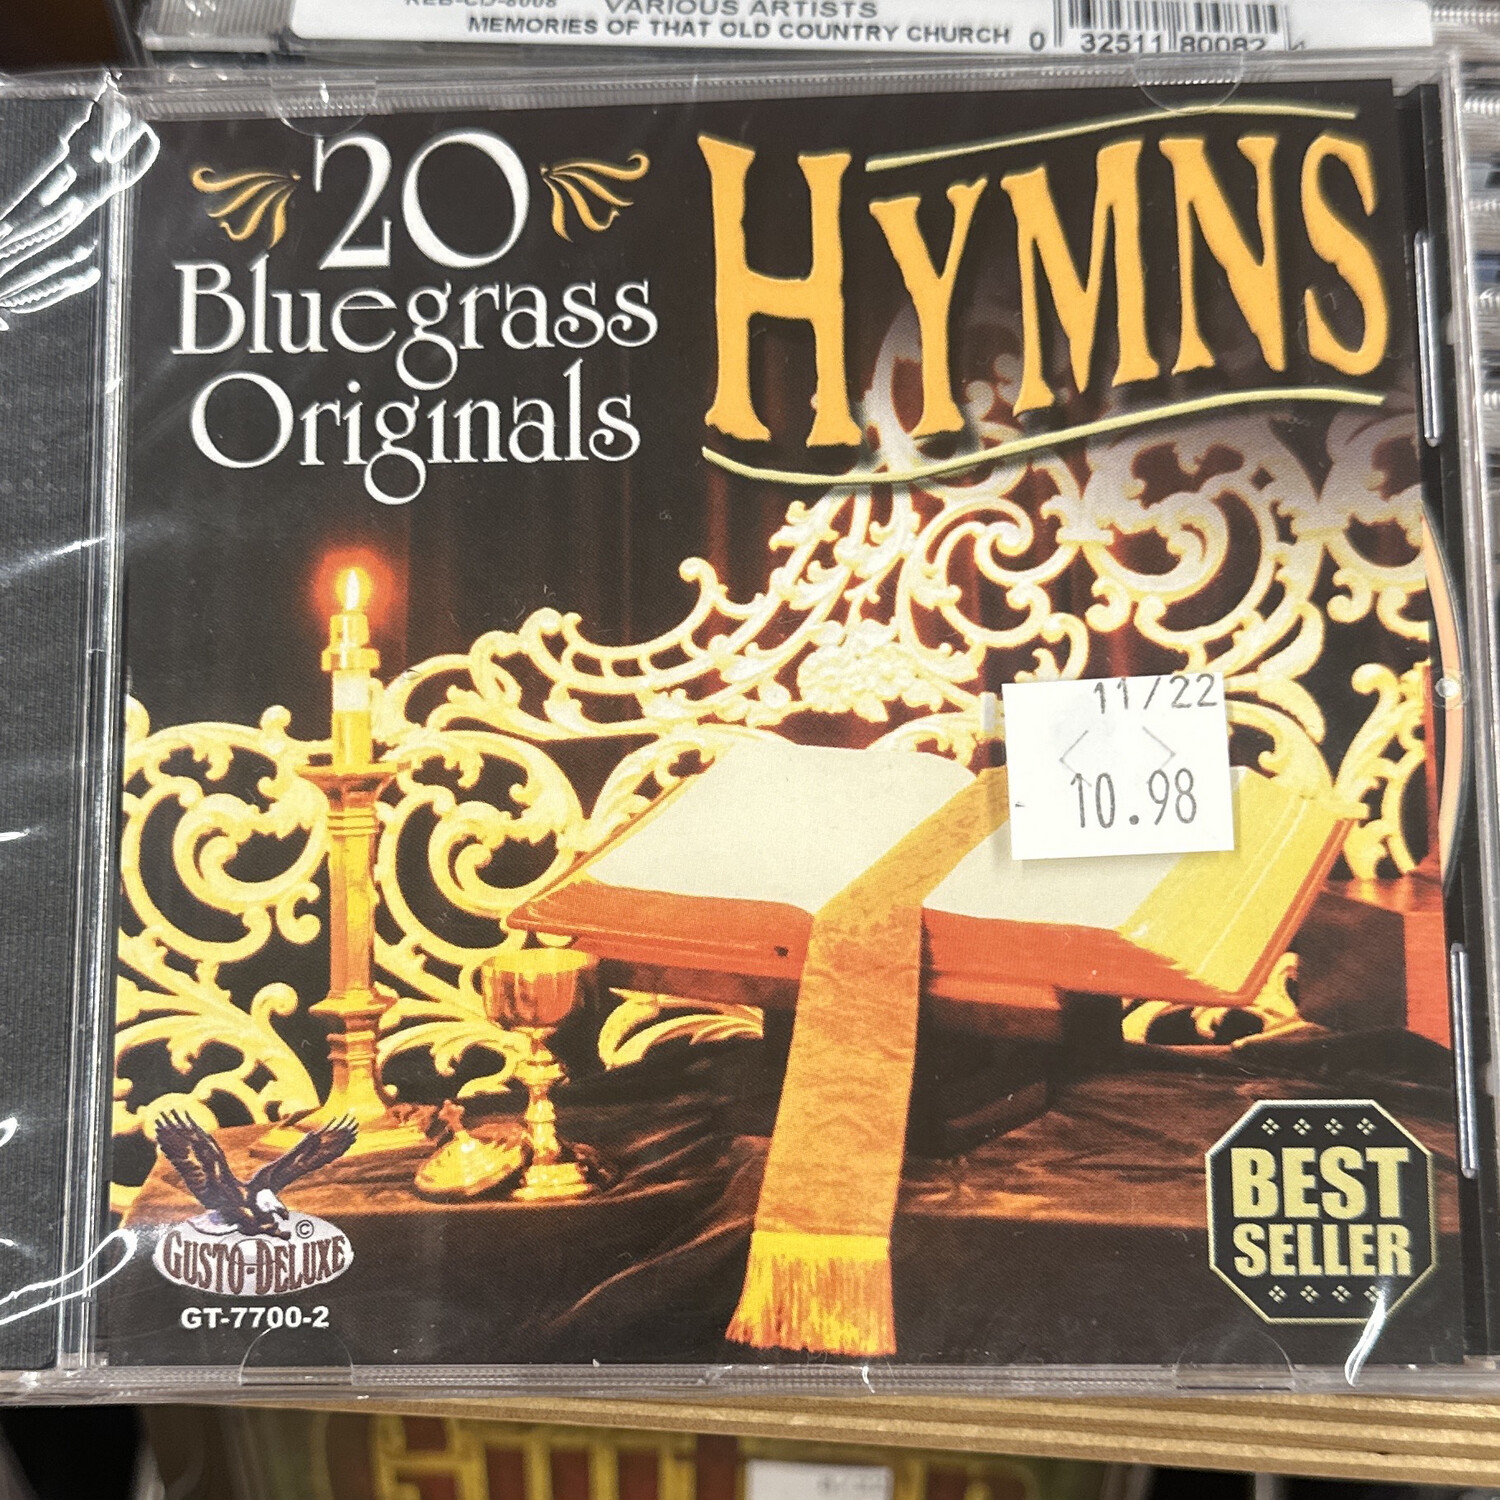 Various 20 Bluegrass Originals Hymns